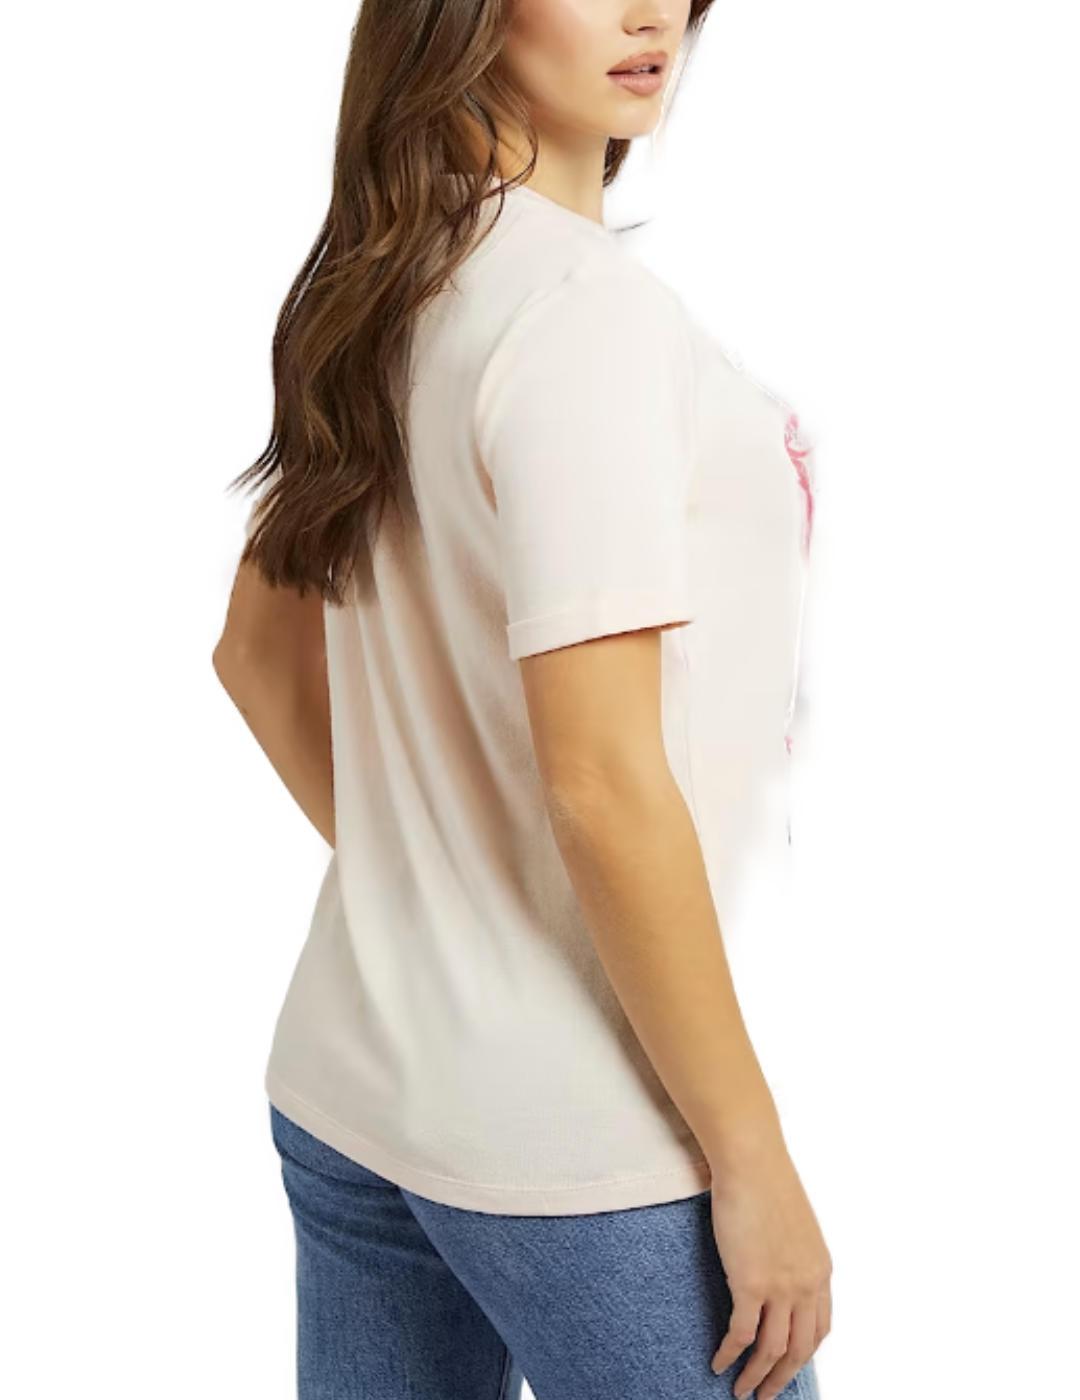 Camiseta Guess Adelina blanco roto manga corta para mujer